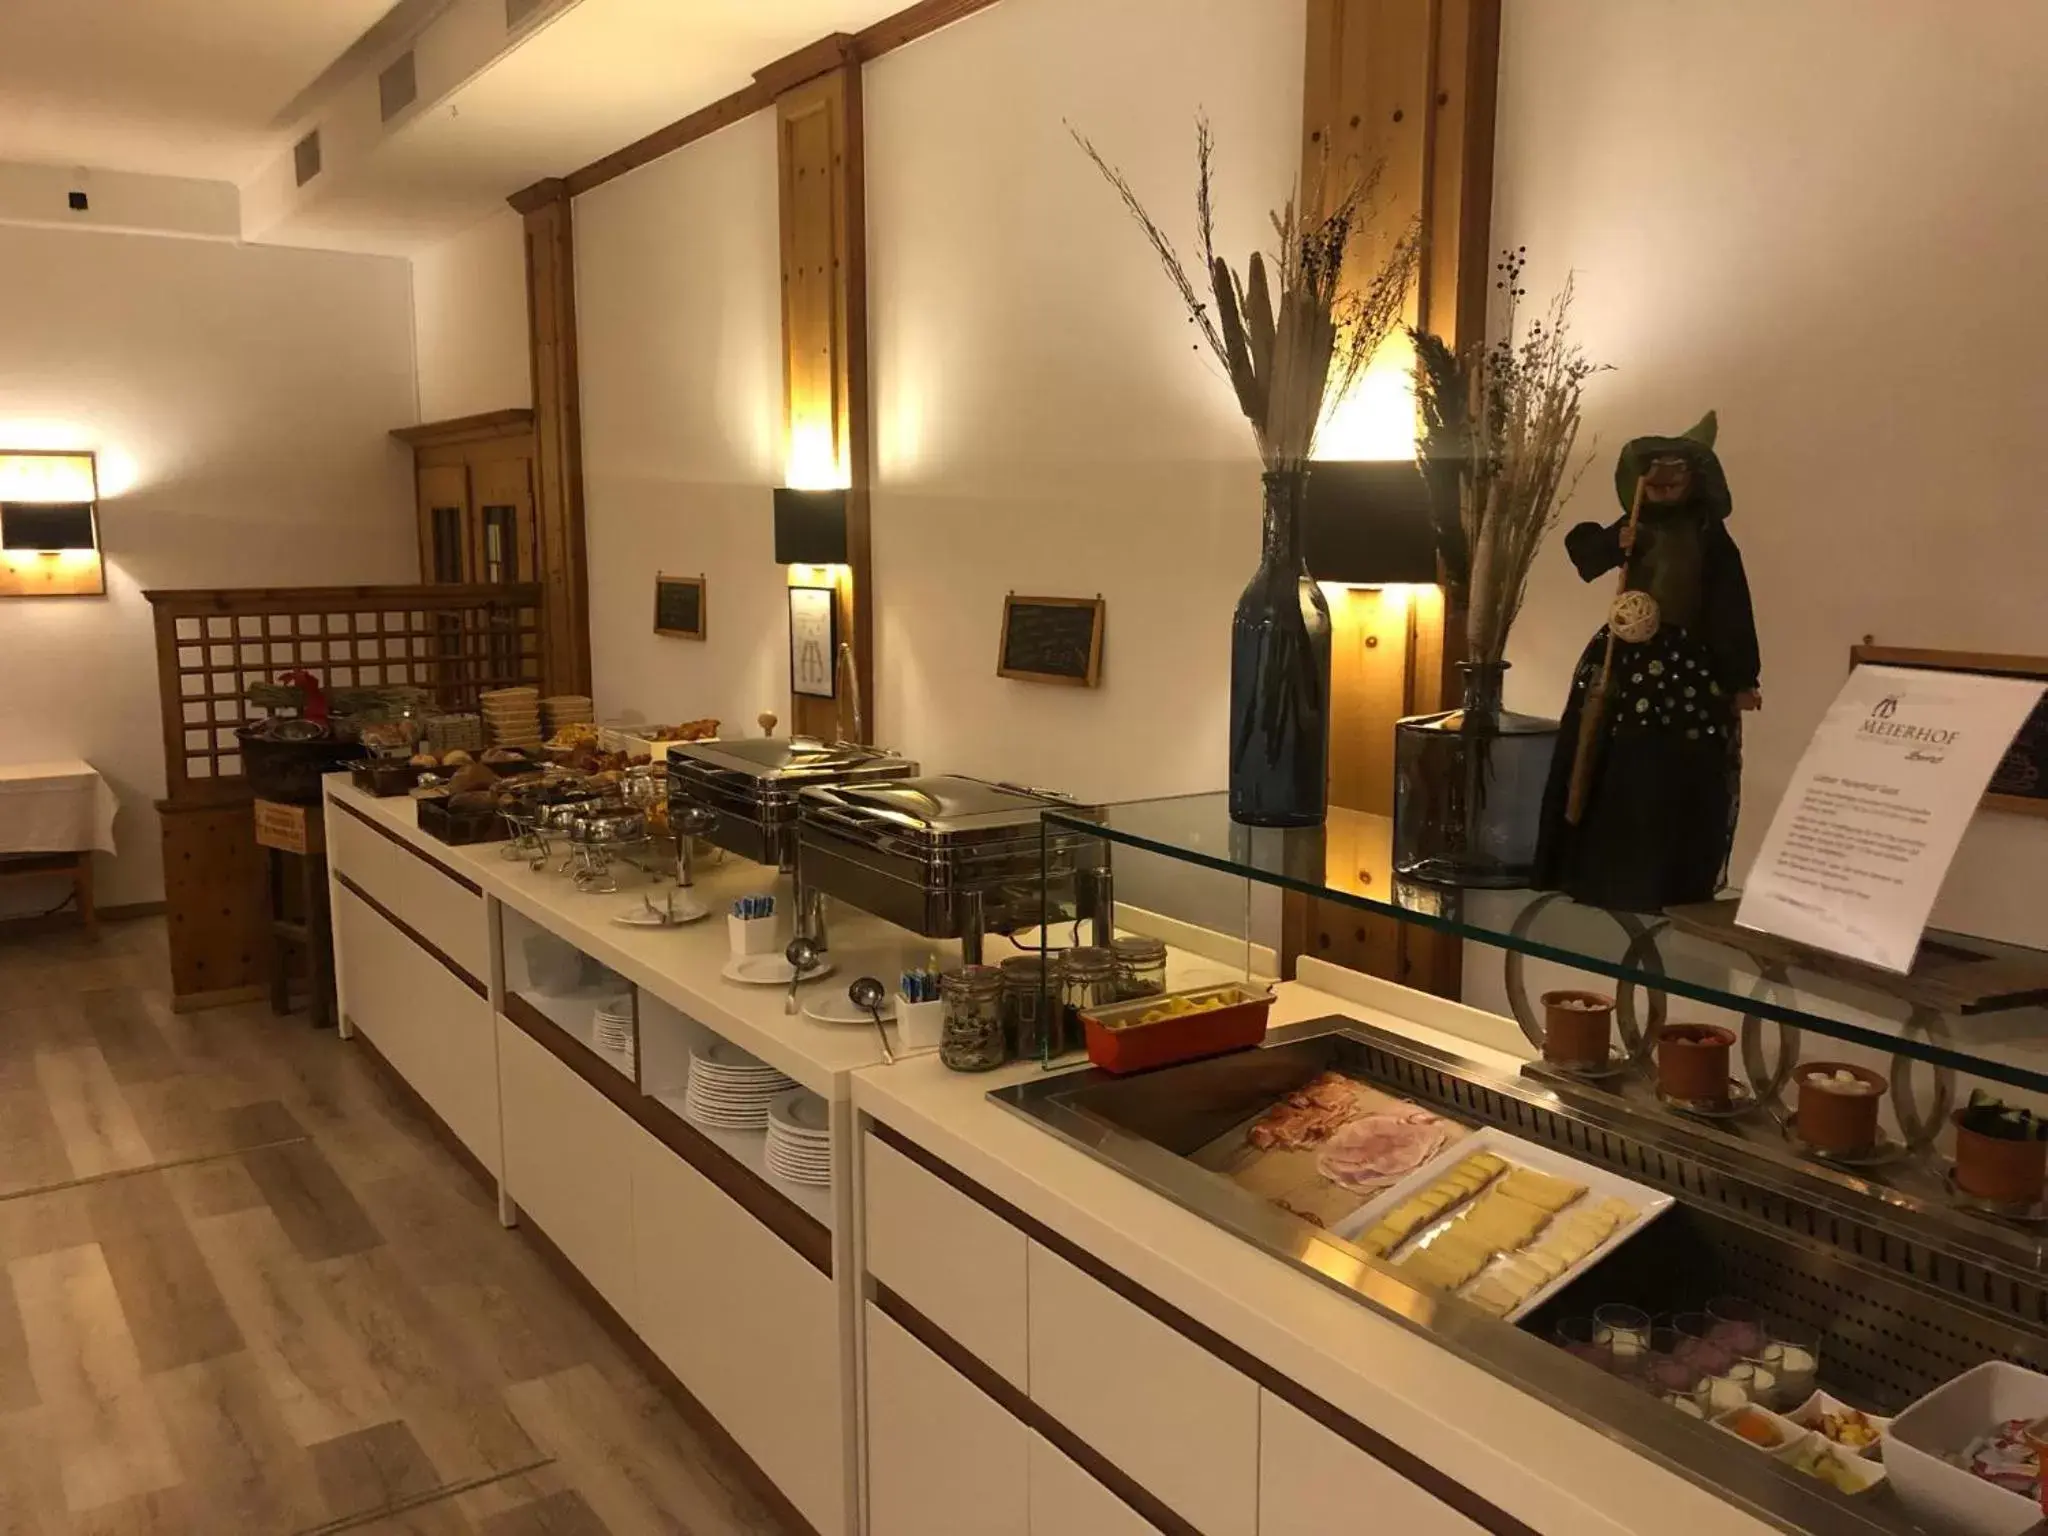 Buffet breakfast, Restaurant/Places to Eat in Hotel Meierhof